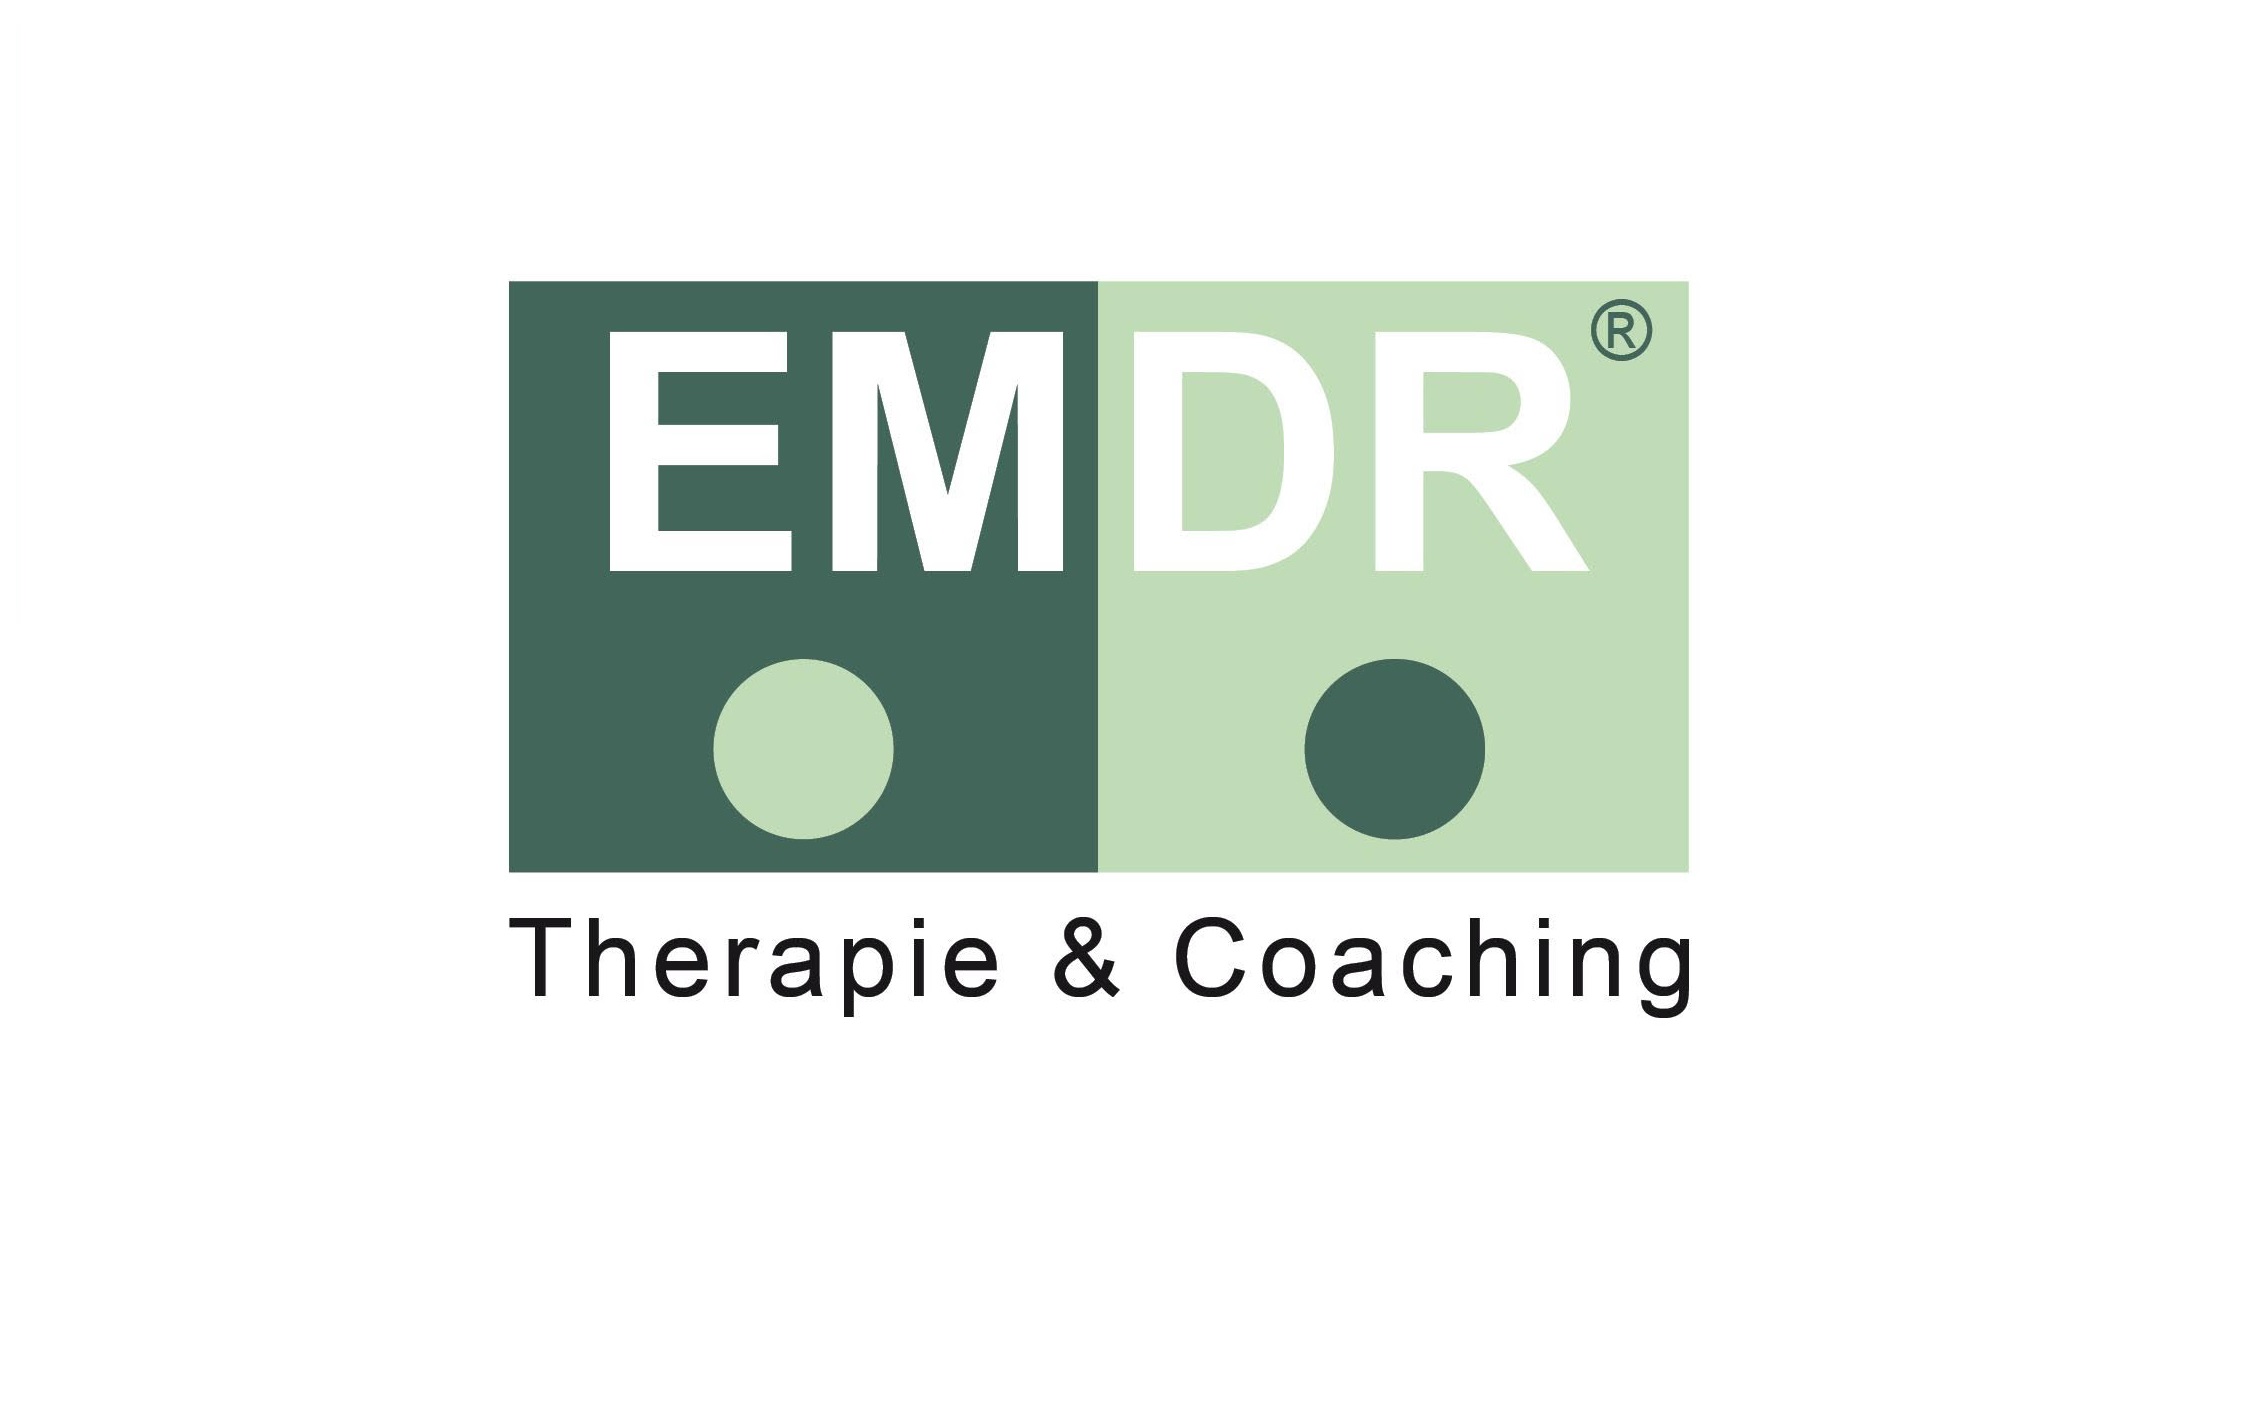 EMDR Therapie & Coaching